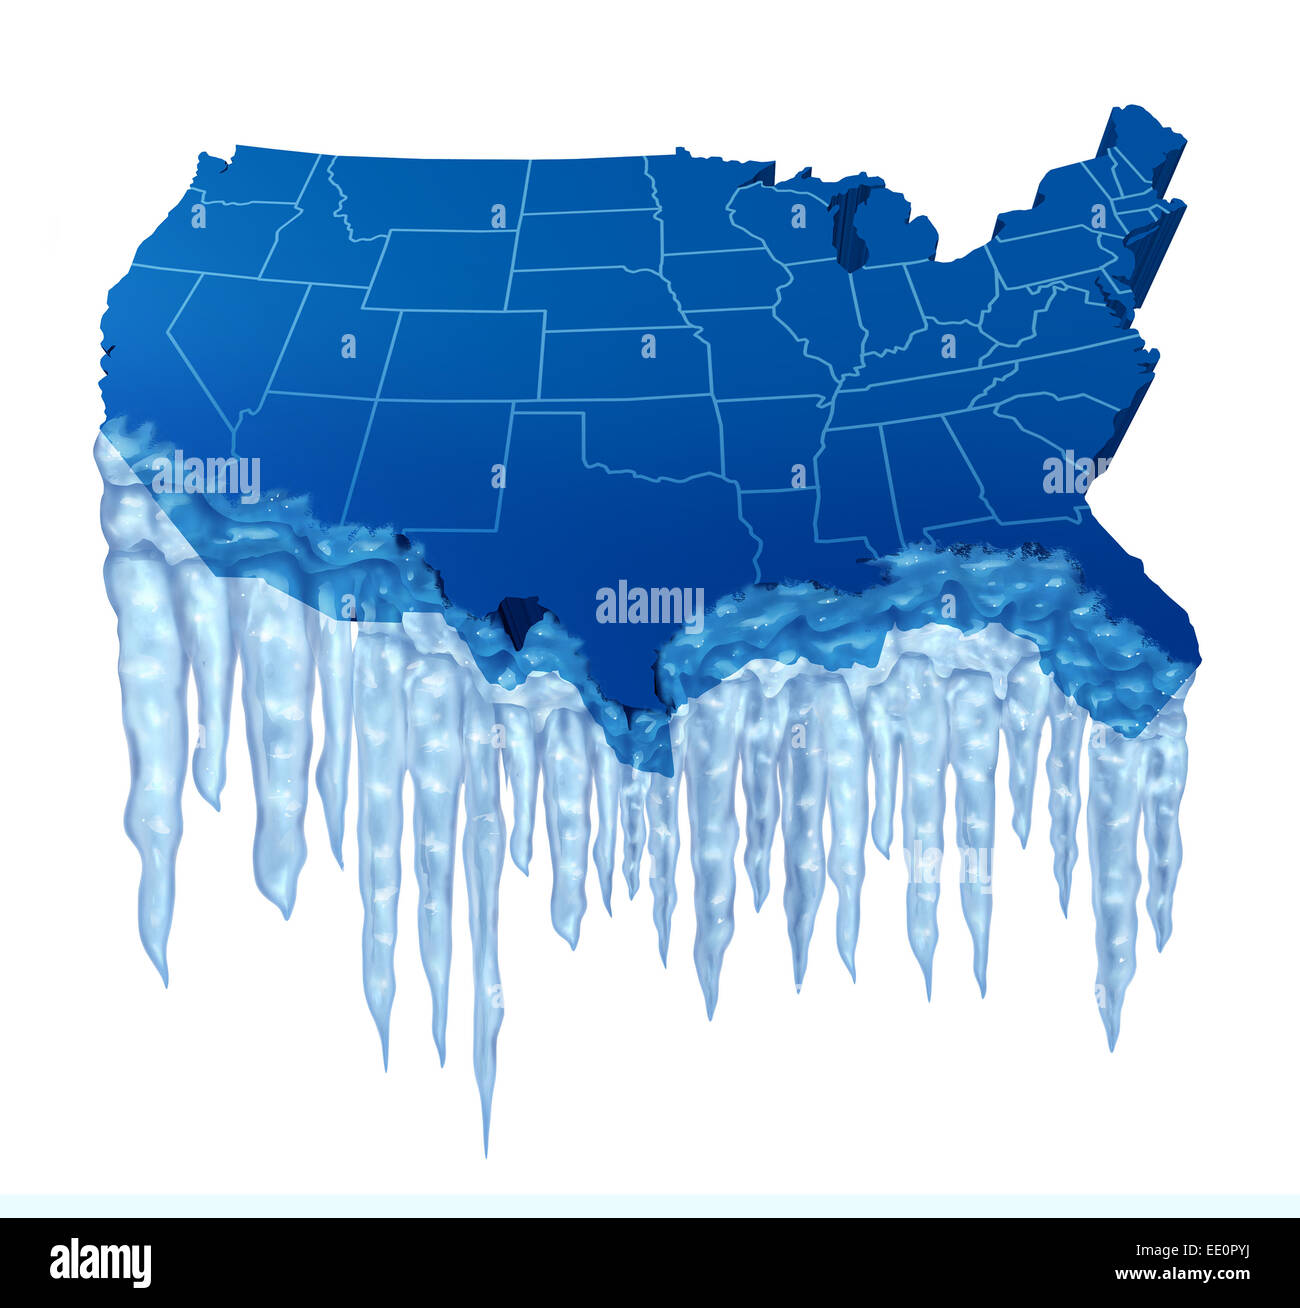 American Deep Freeze e congelamento temperatura fredda negli Stati Uniti concept come una mappa di blu di America con ghiaccio congelato e ghiaccioli. Foto Stock